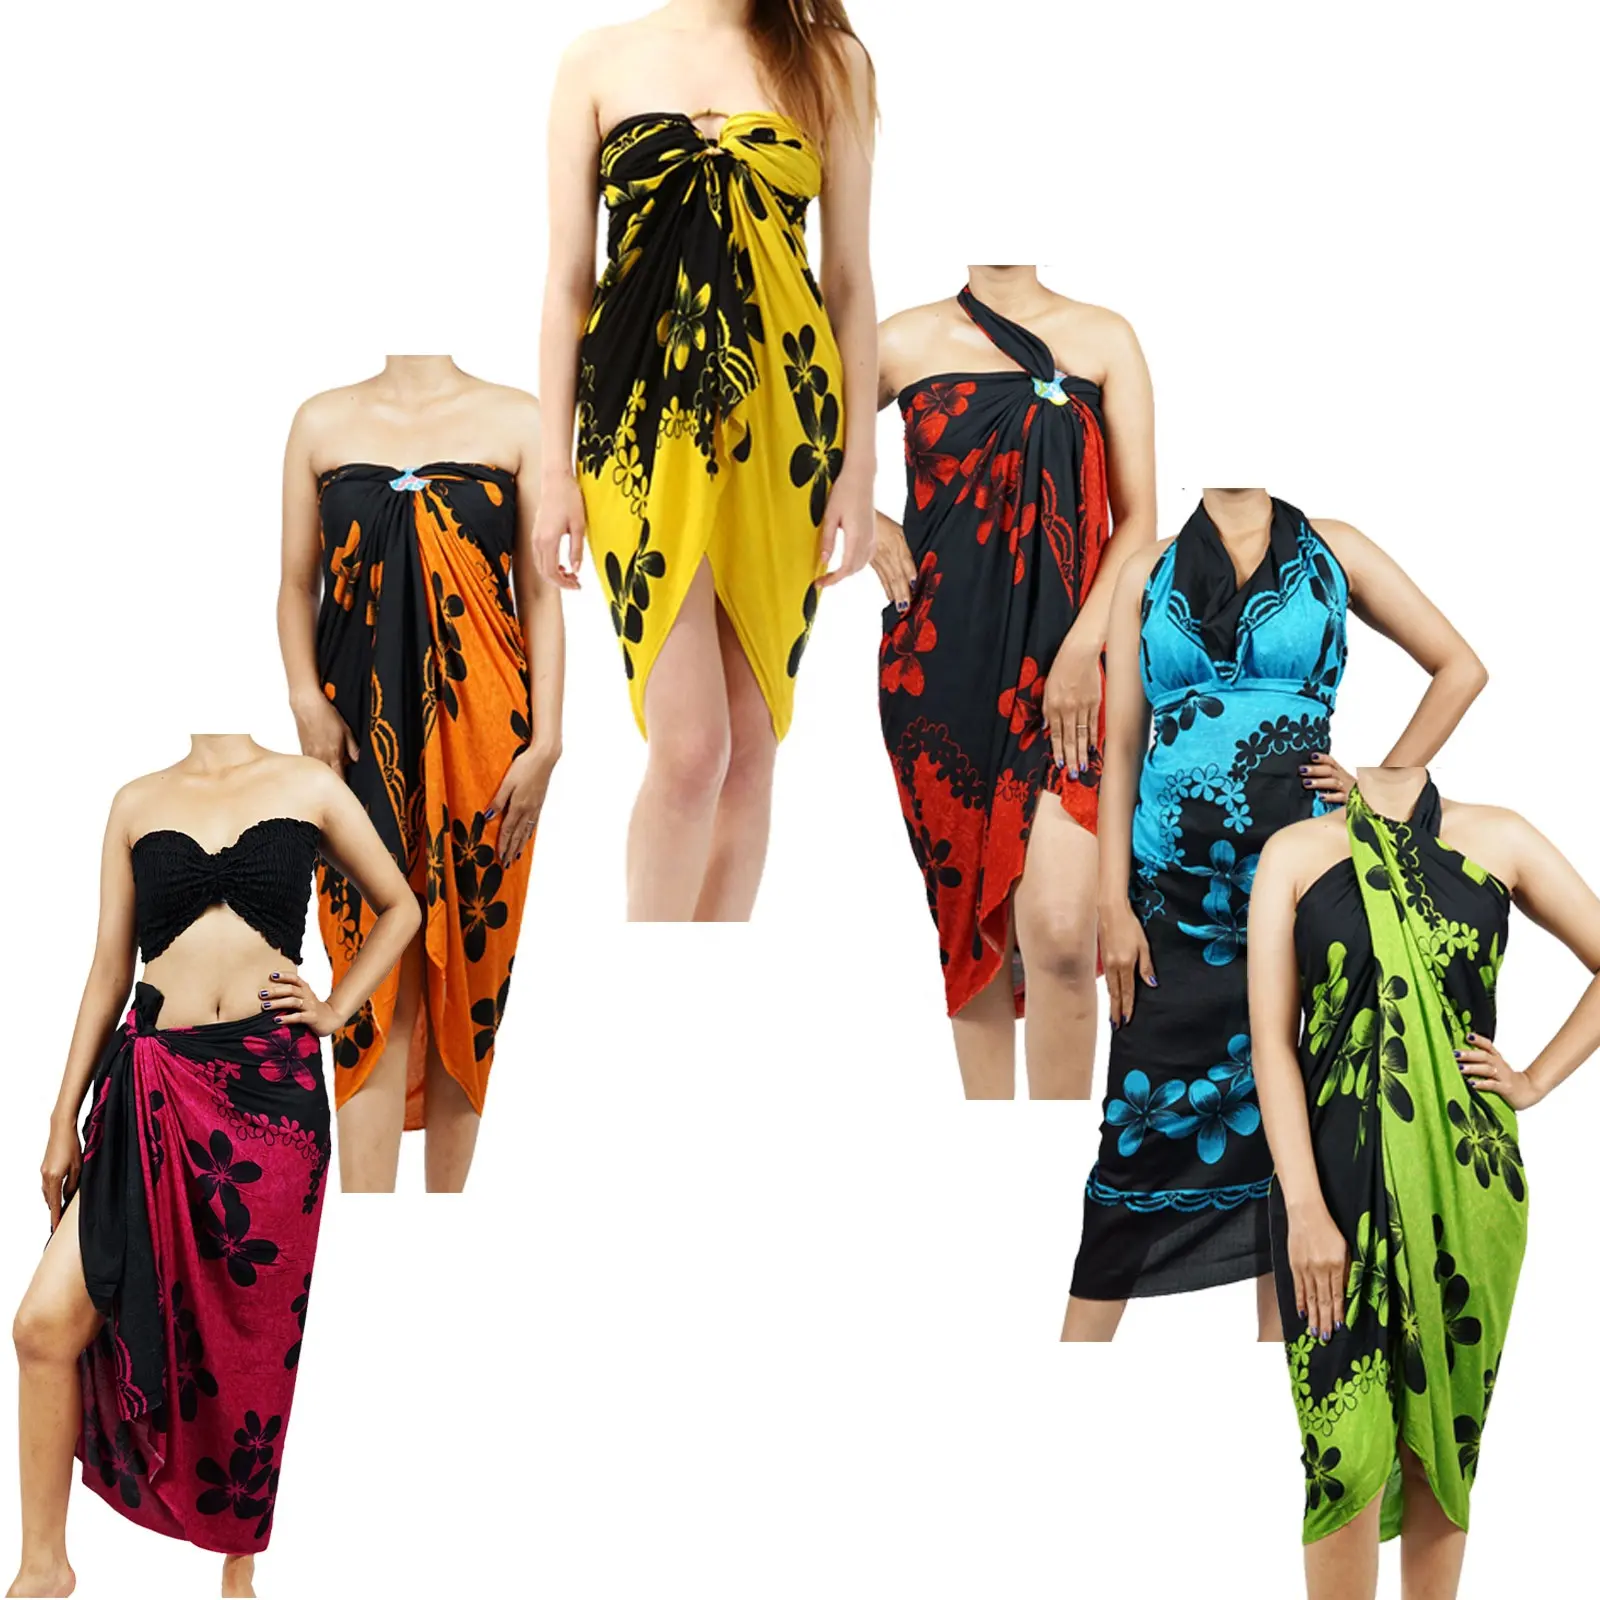 Ultimo disegno floreale stampato pareo beach dress 100% rayon sarong bikini costumi da bagno coprire da Indonesia